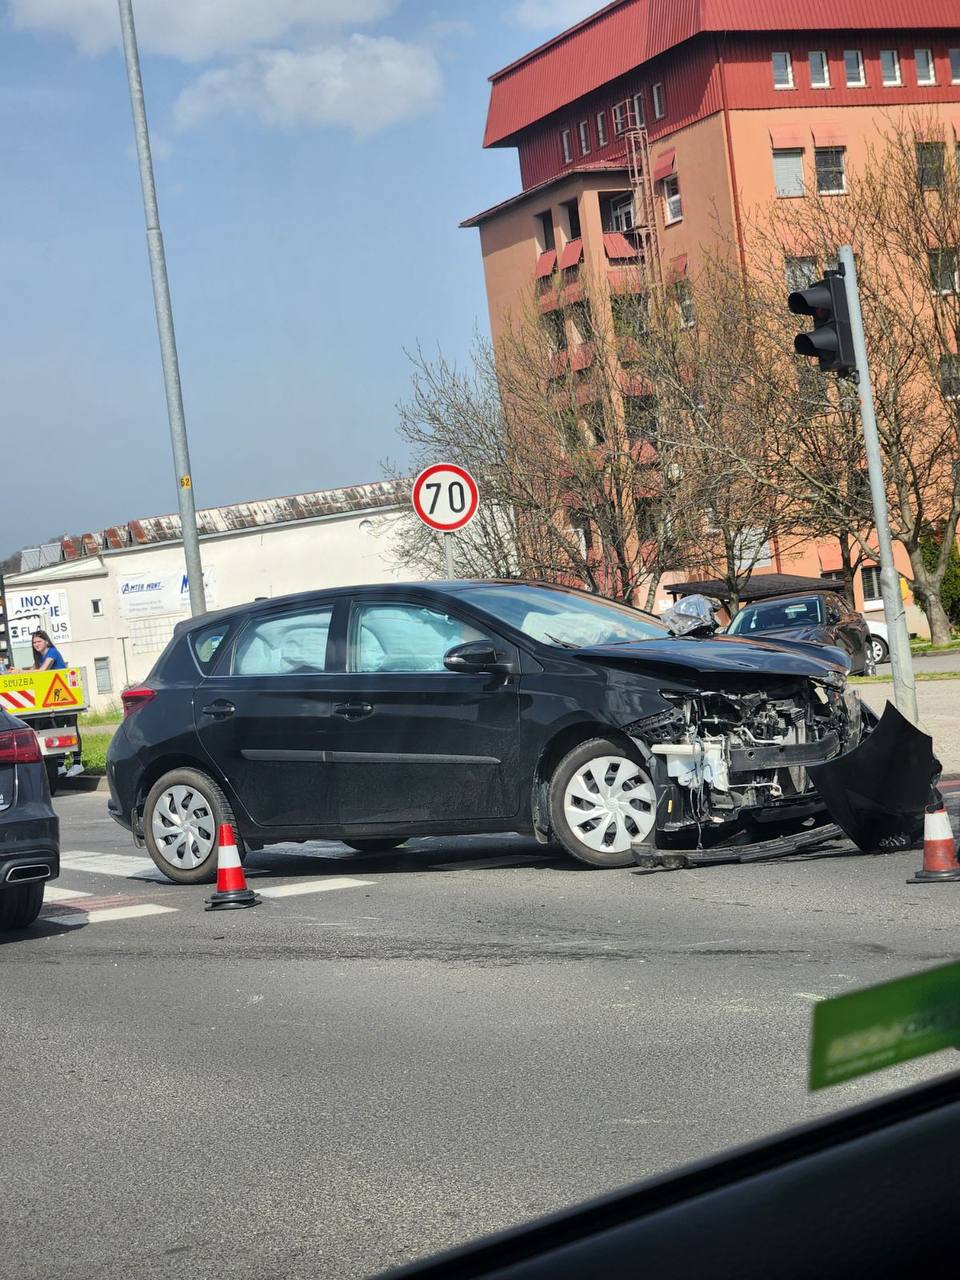 FOTO: Prometna nesreča v Mariboru, policija prosi za pomoč